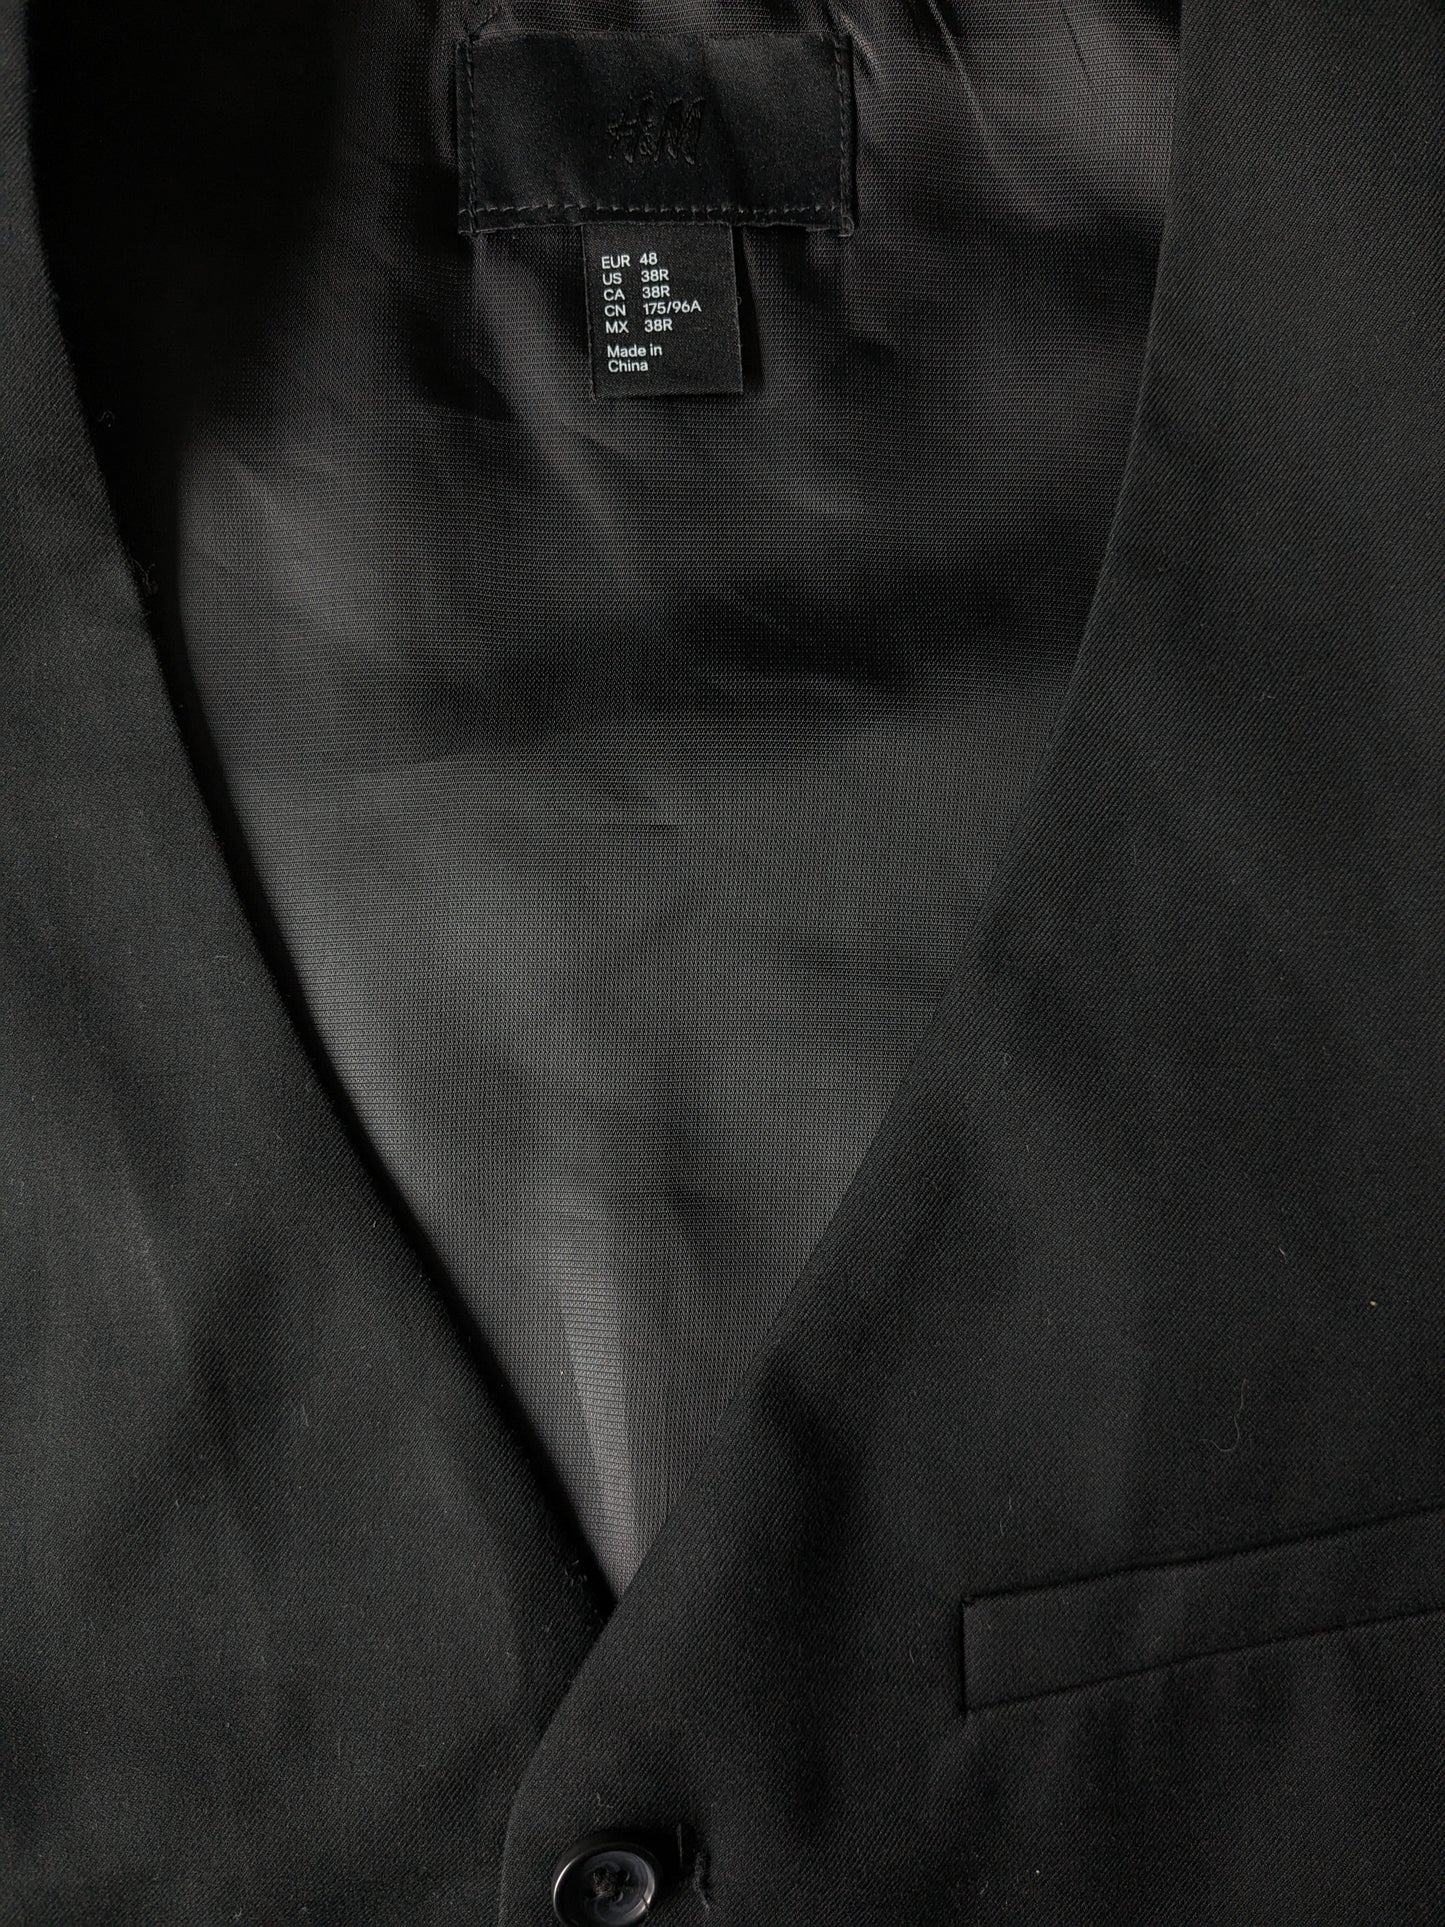 H&M gilet. Zwart gekleurd. Maat 48 / S. #334.